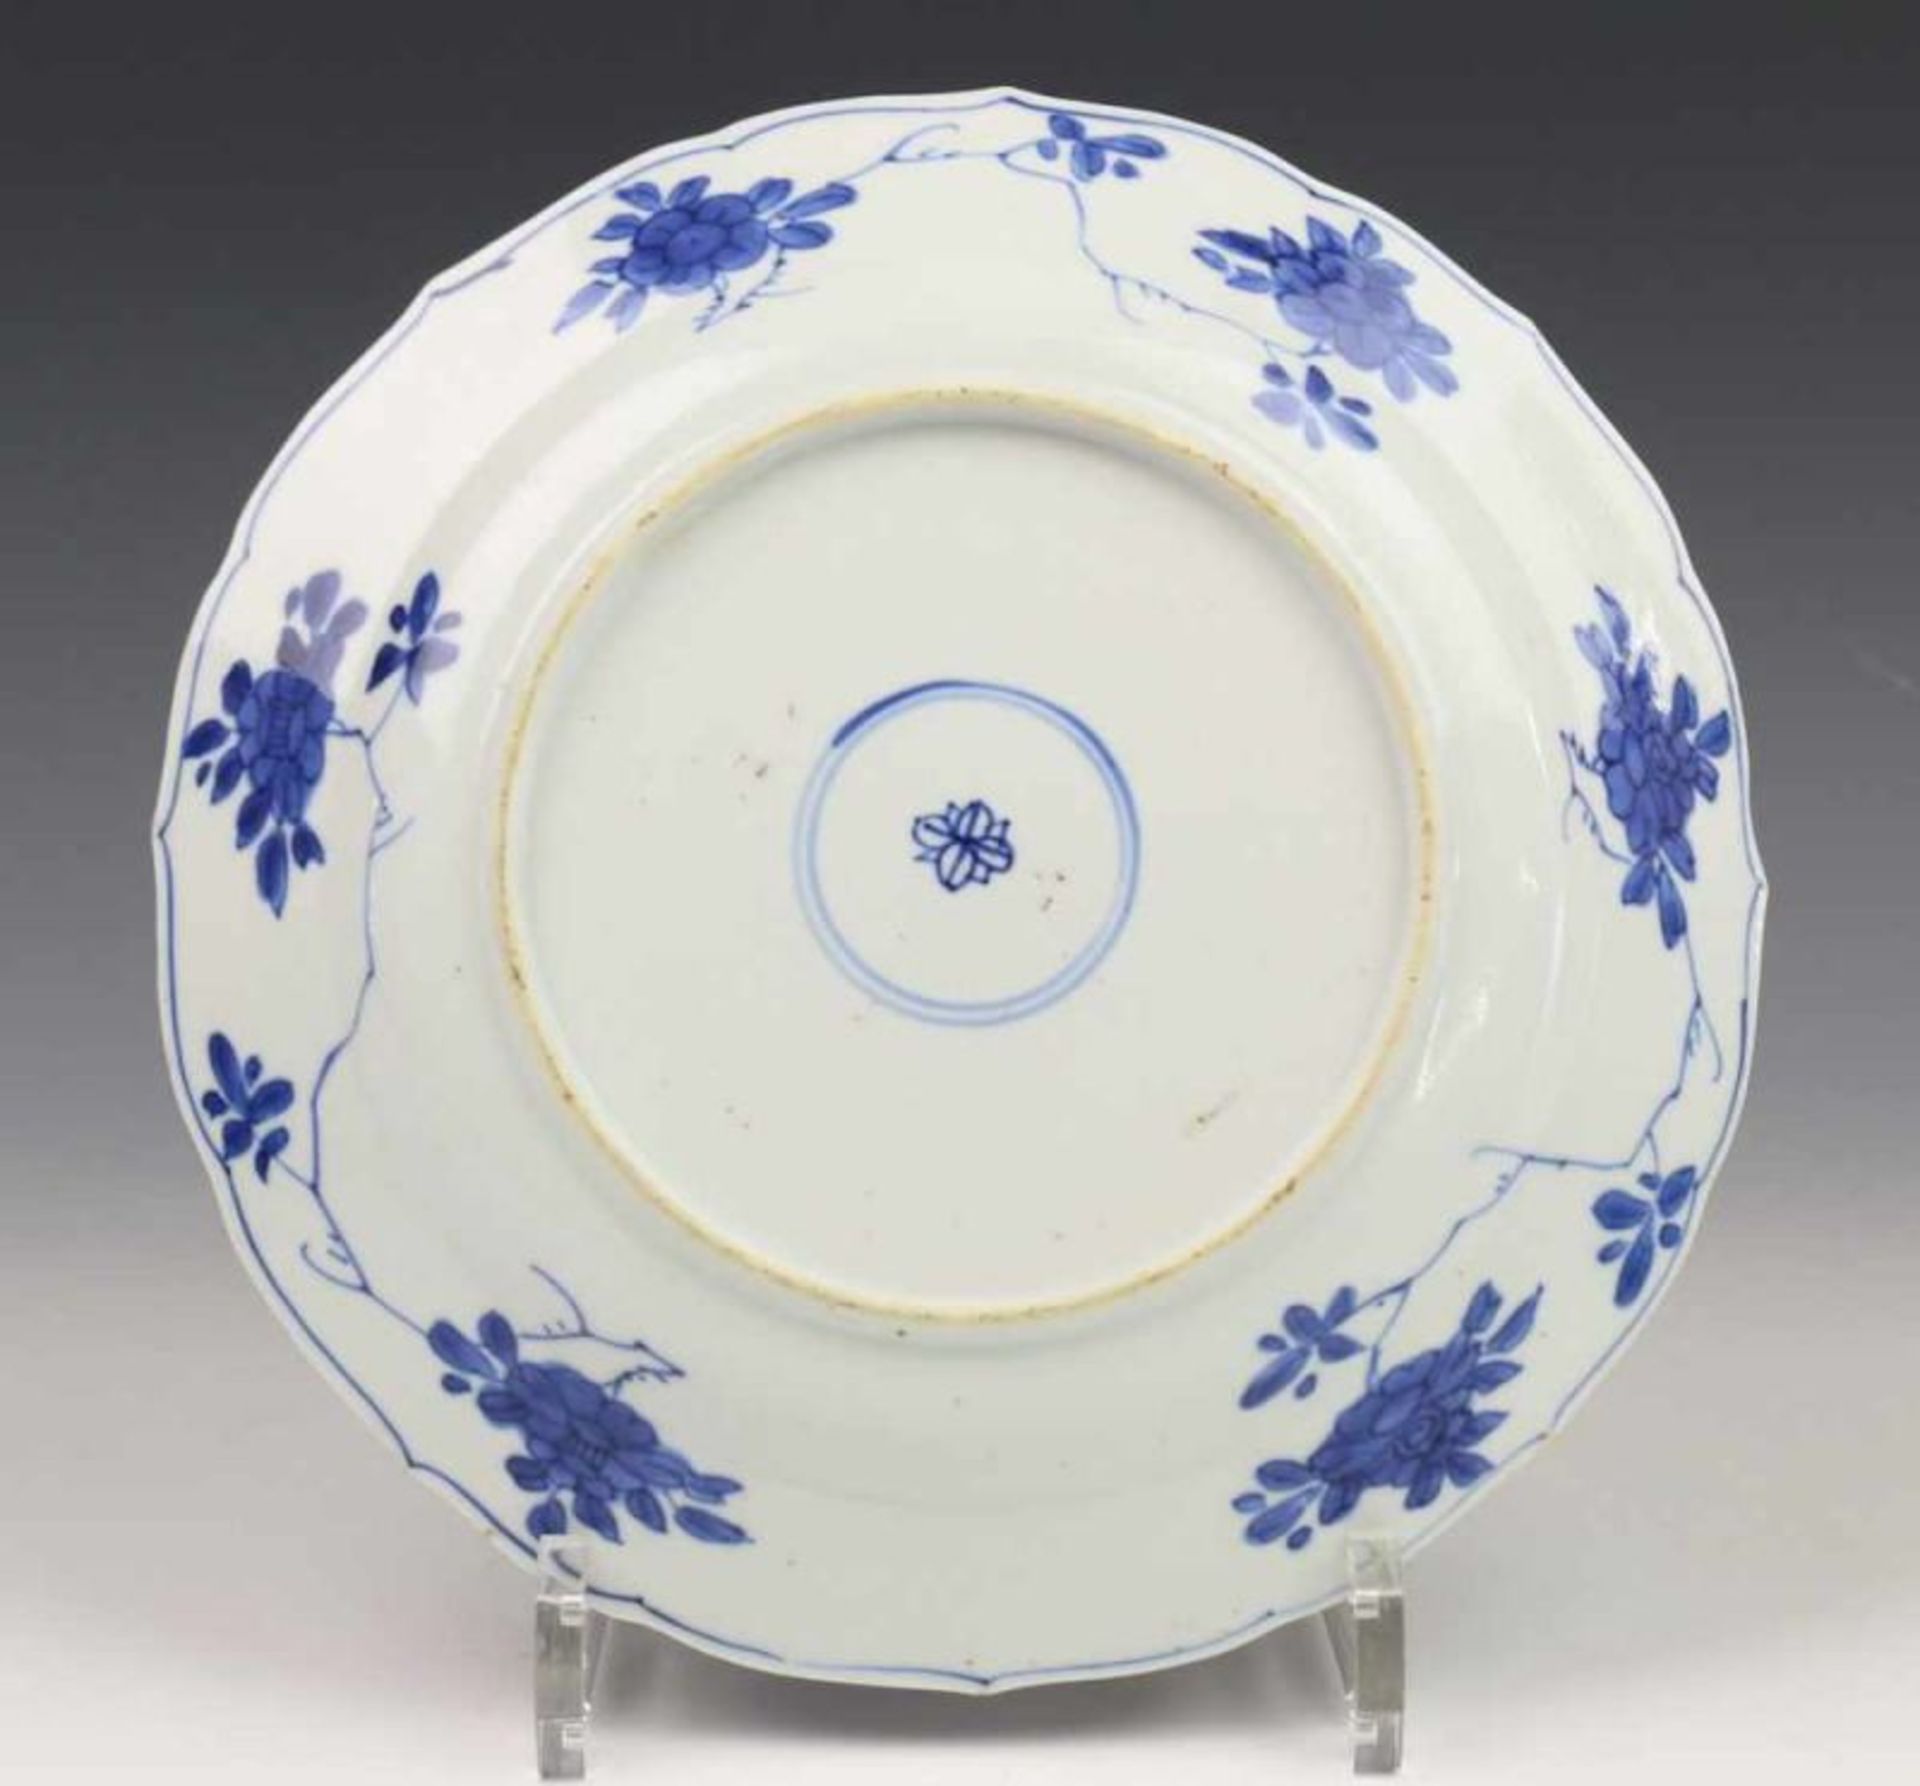 China, paar blauw-wit porseleinen borden, Kangxi, met decor van bloesemboom bij hekwerk, de rand met - Image 3 of 5